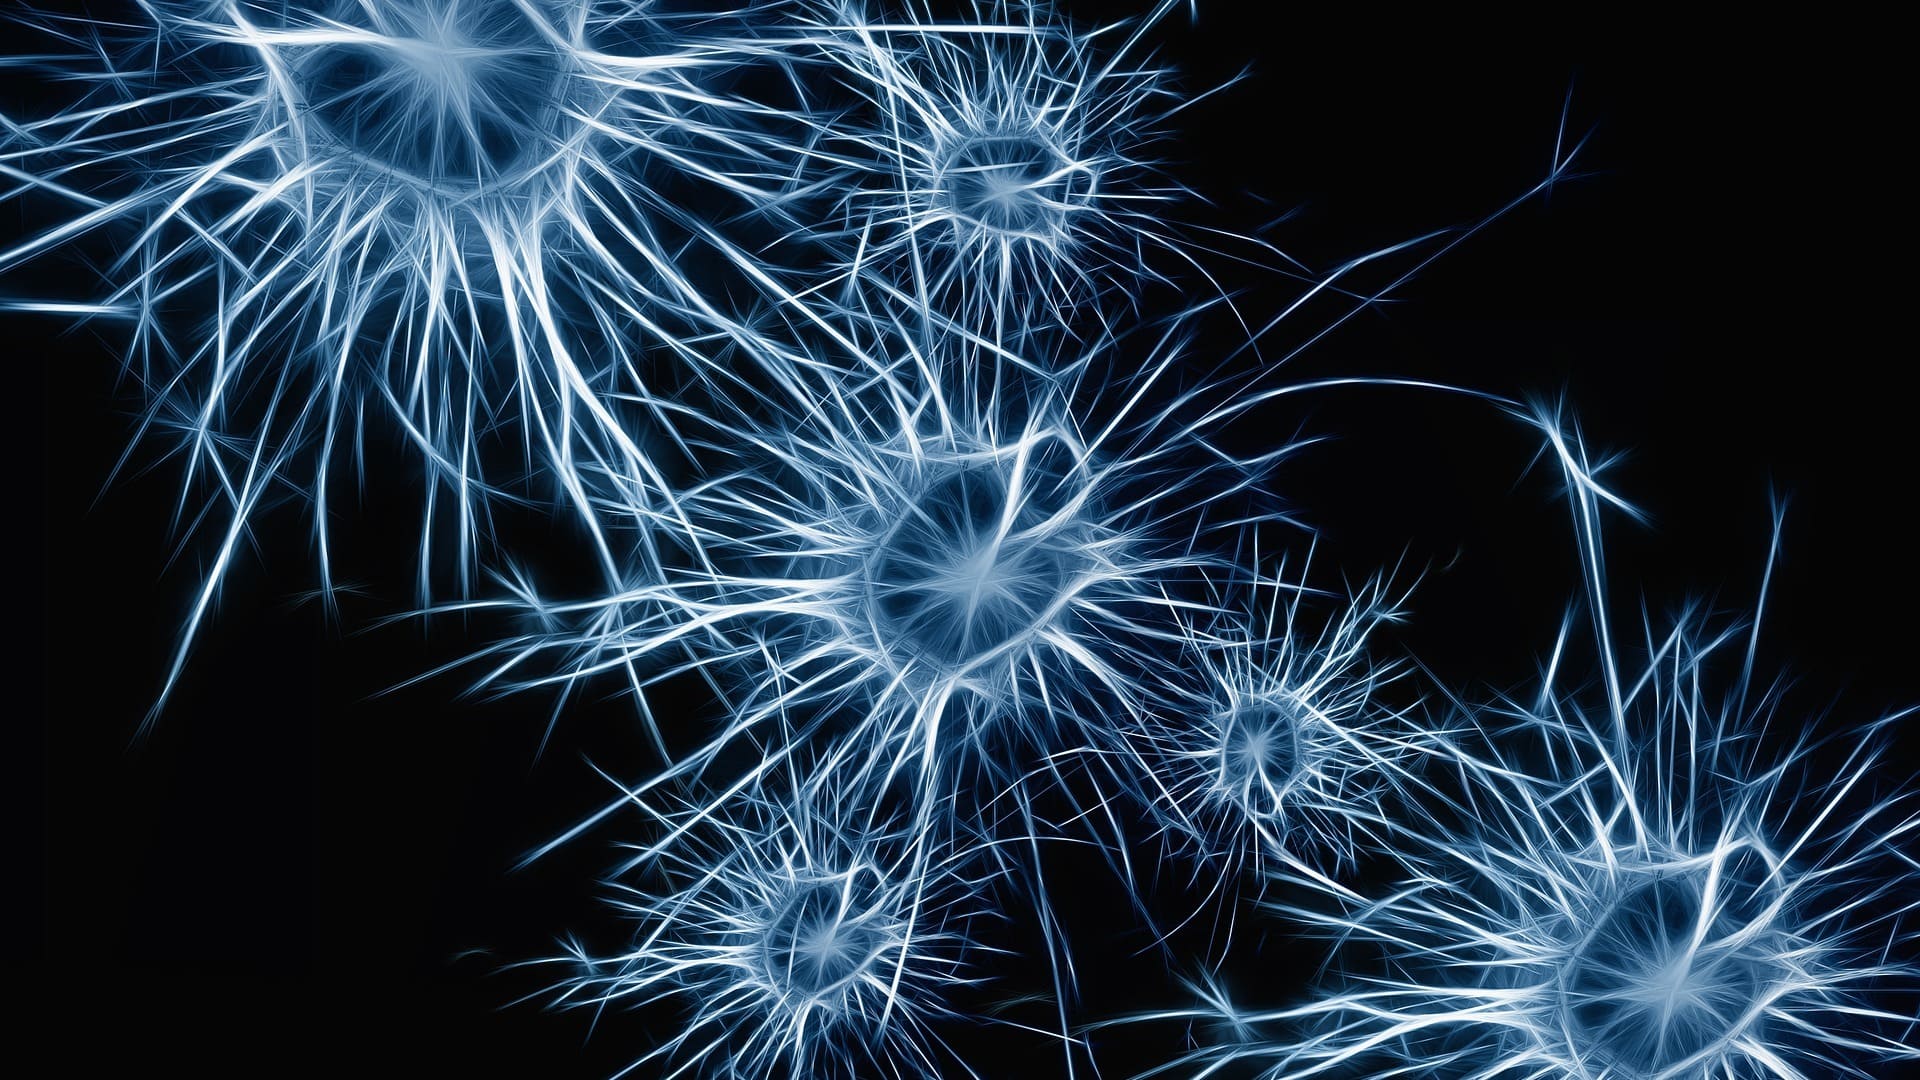 Neuron - Was ist das? Eine Definition